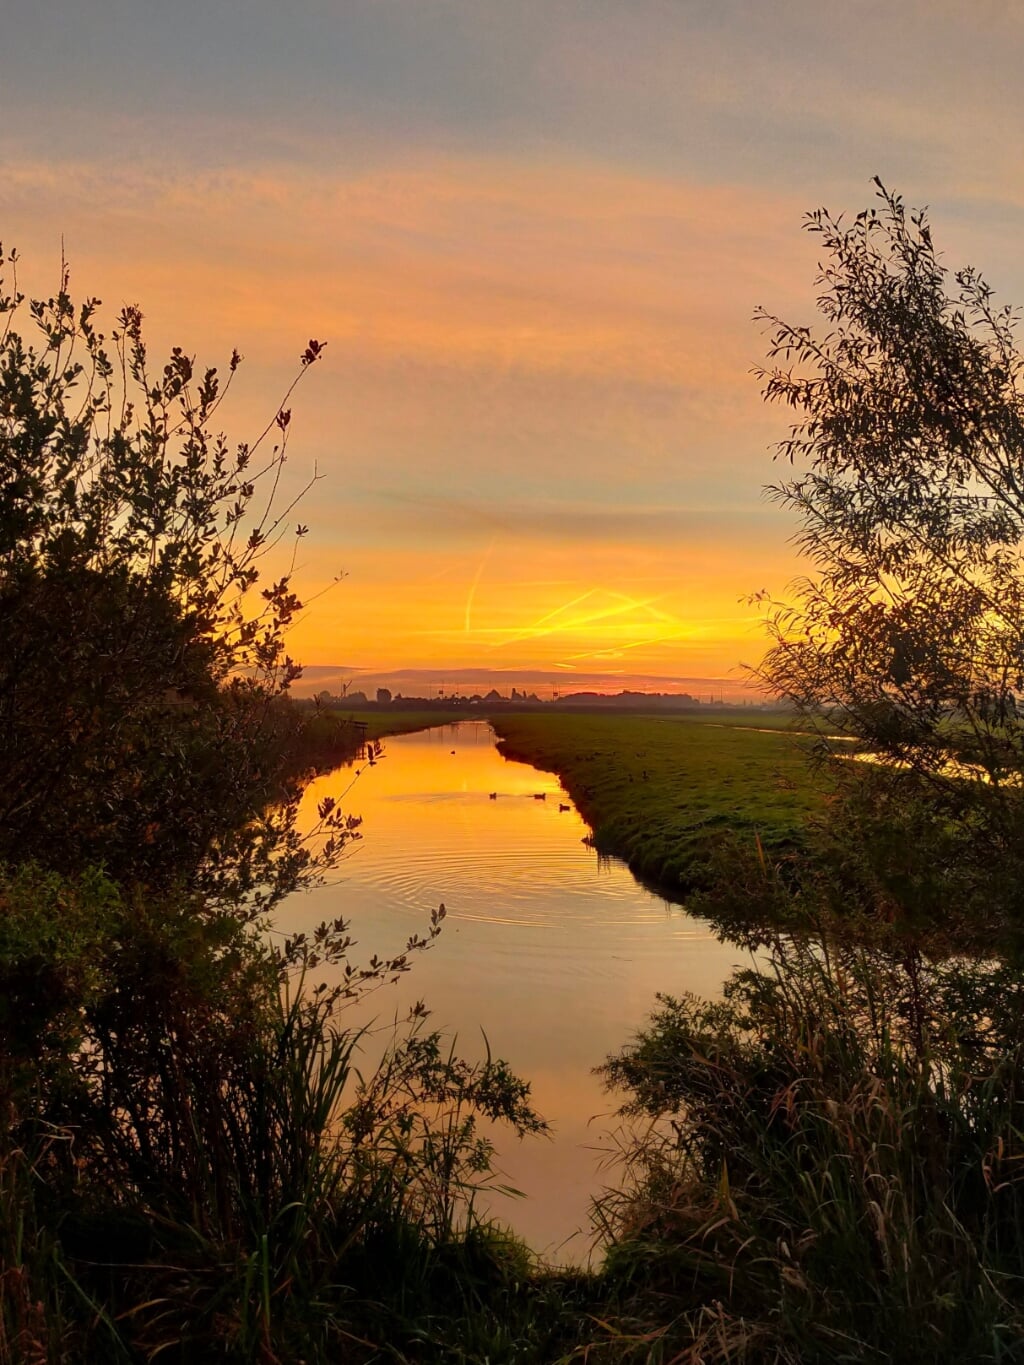 Heidi Bontje maakte deze prachtige foto van de zonsopkomst. 